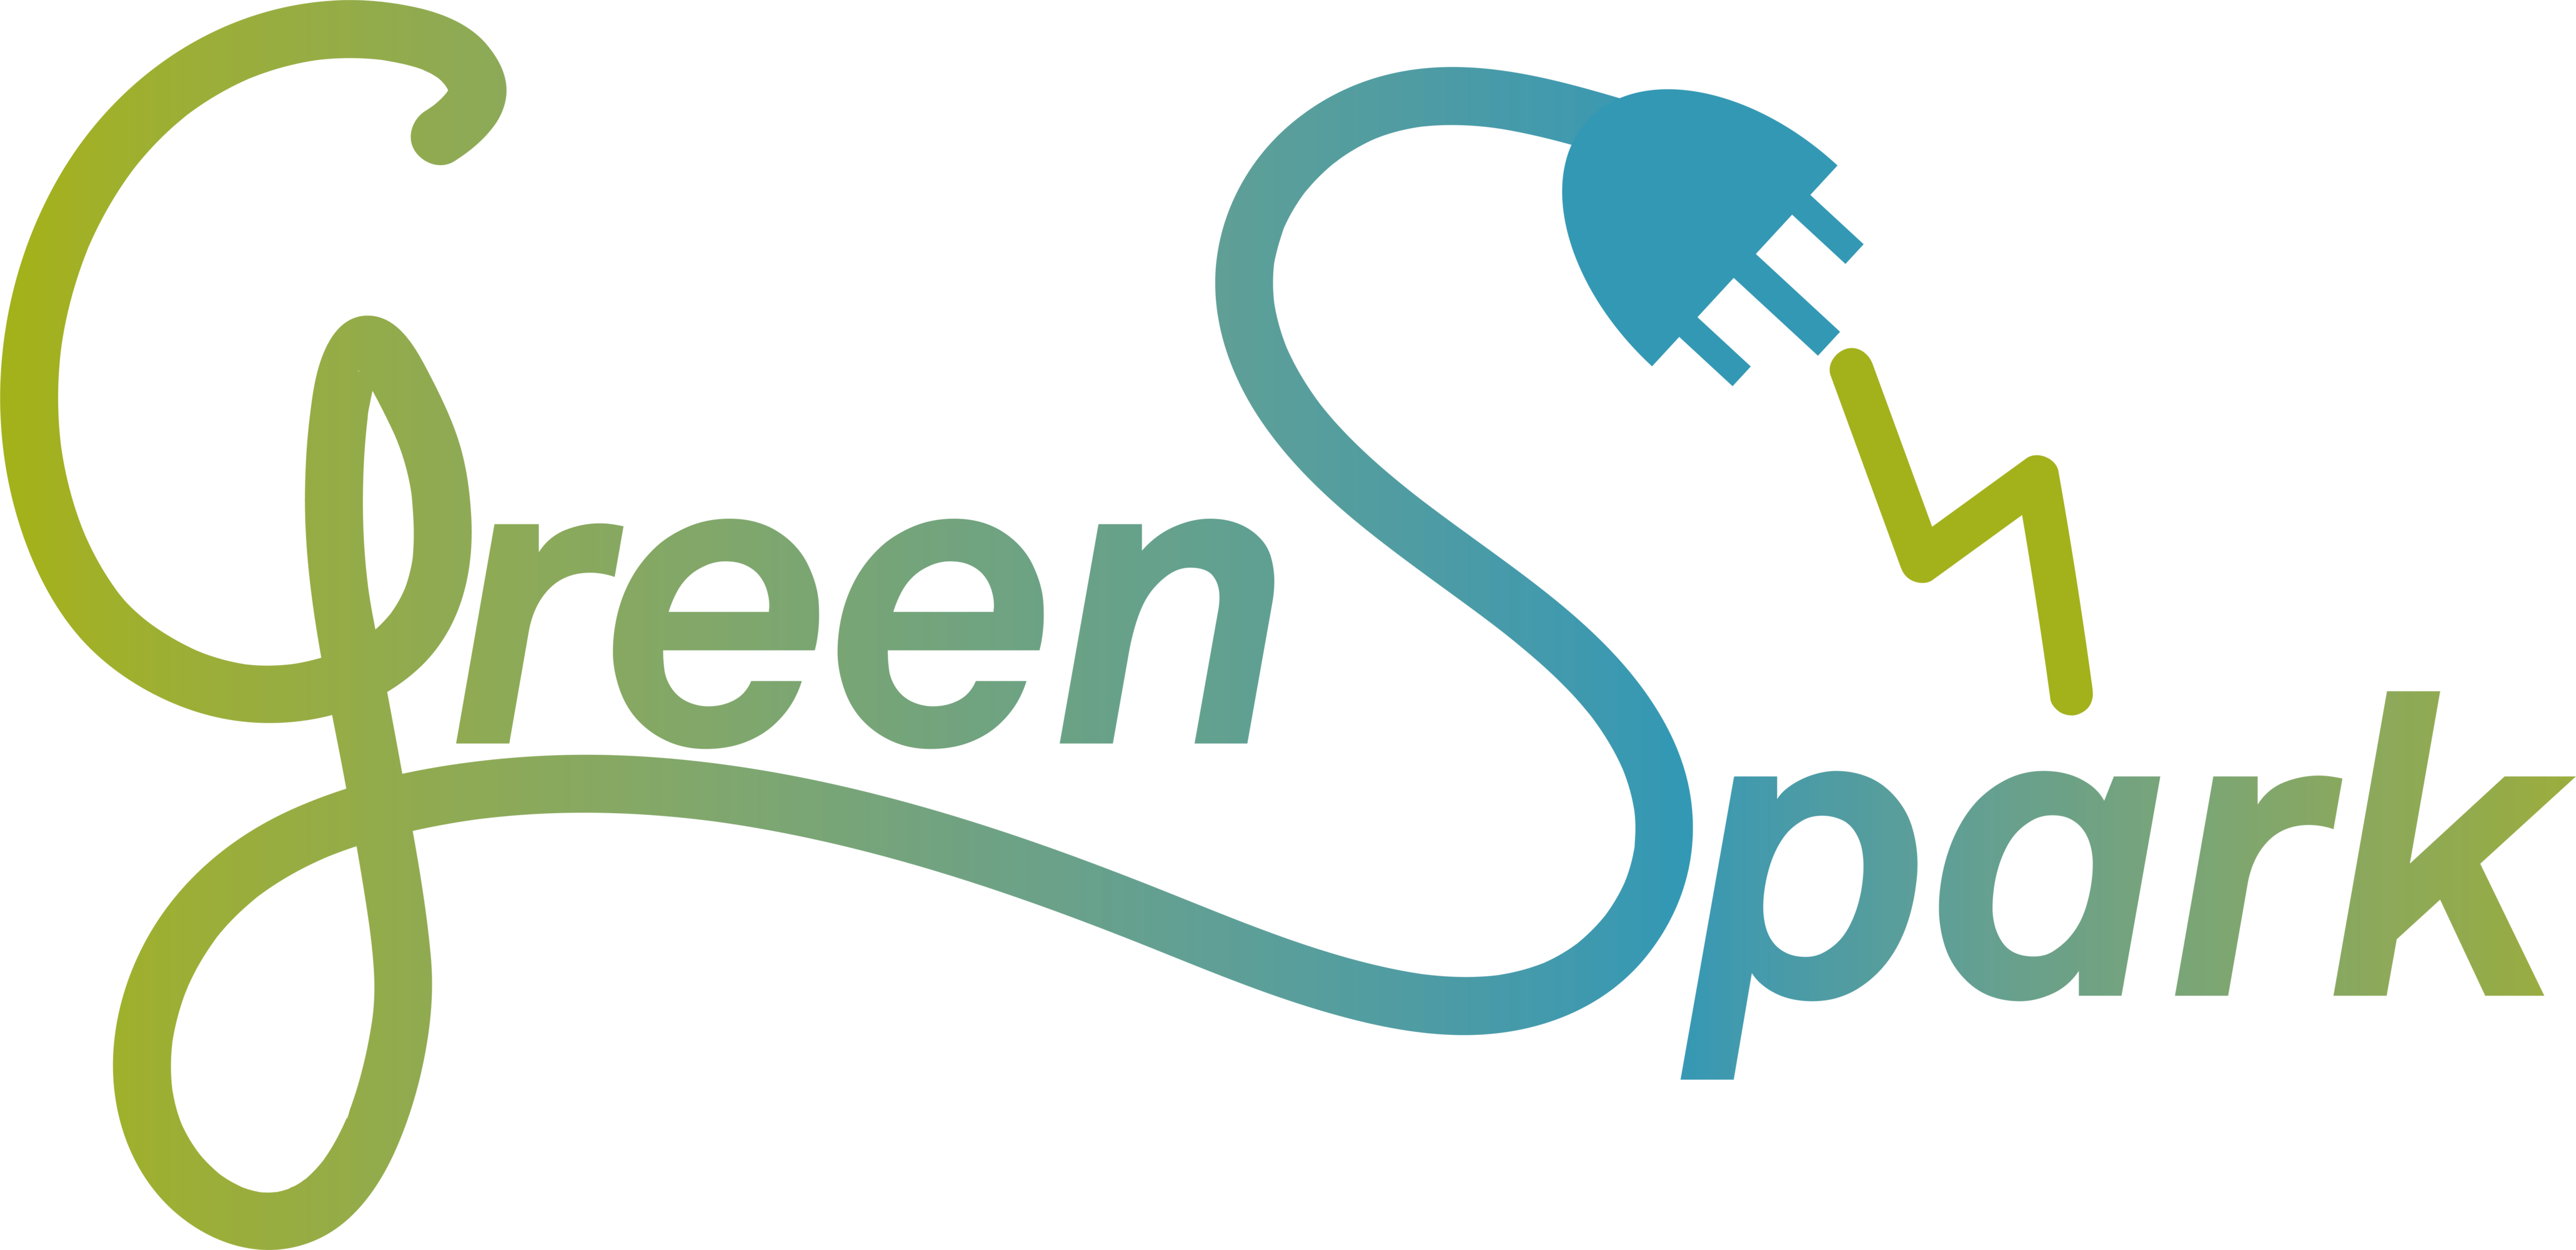 Green Spark service logo